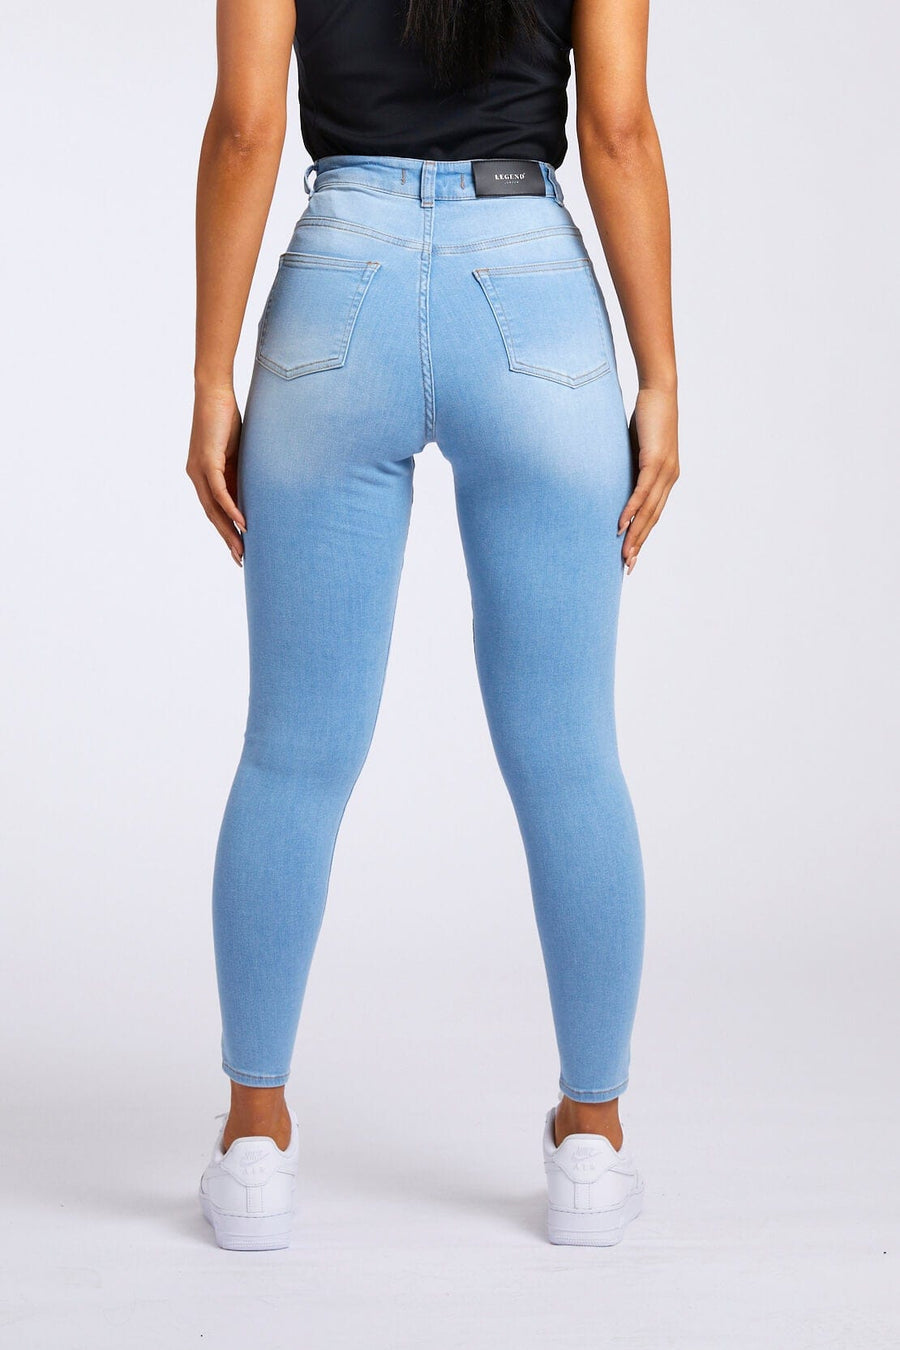 Legend London Women's Jeans SKINNY JEANS - LIGHT BLUE